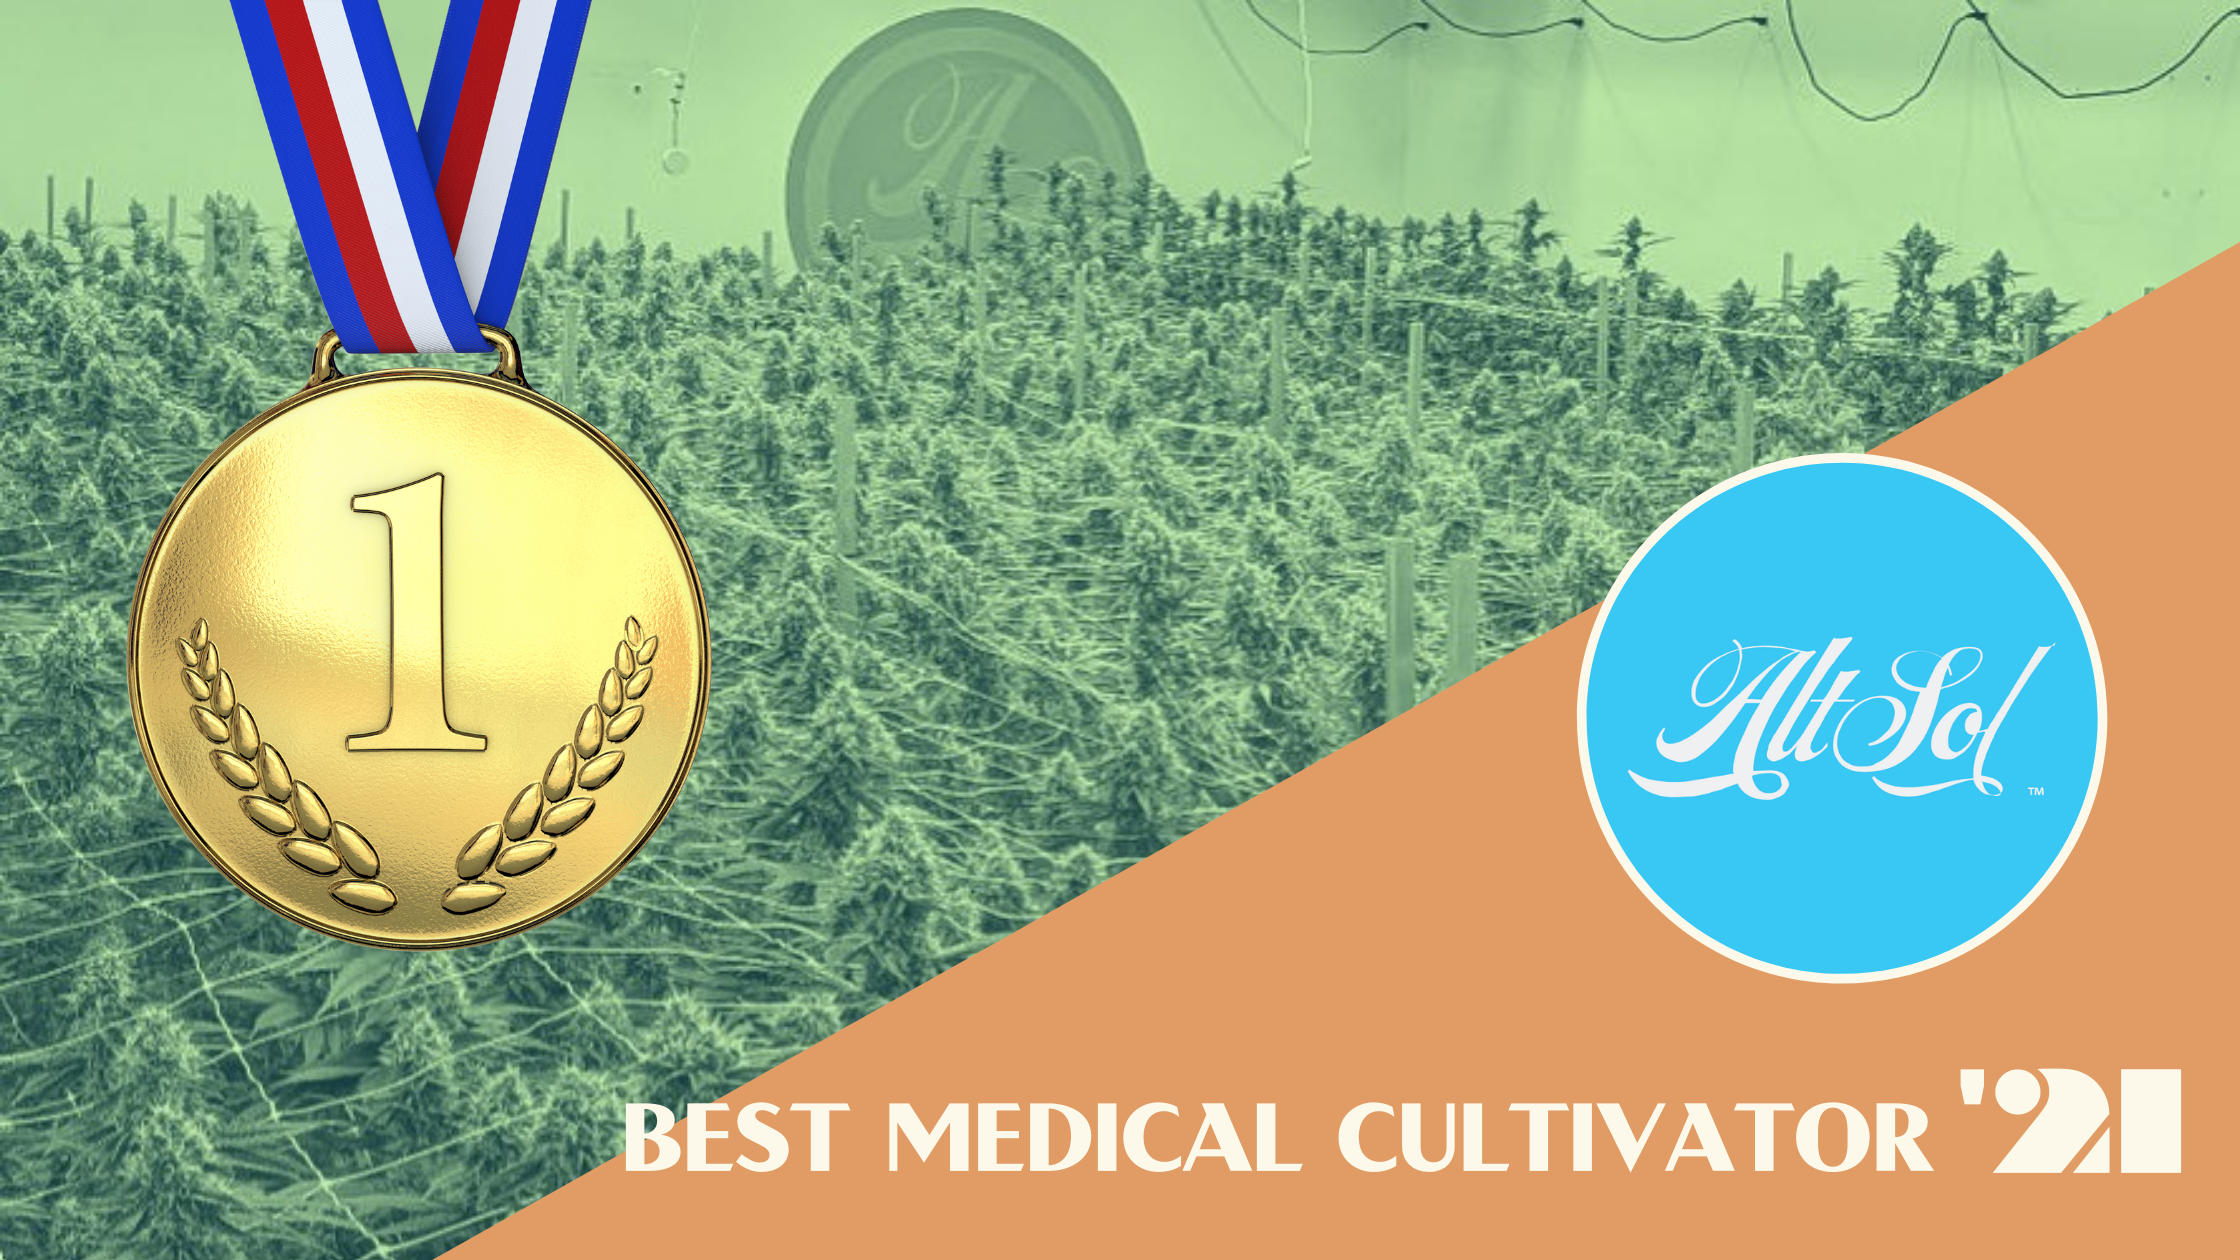 Best Medical Cultivator alt sol